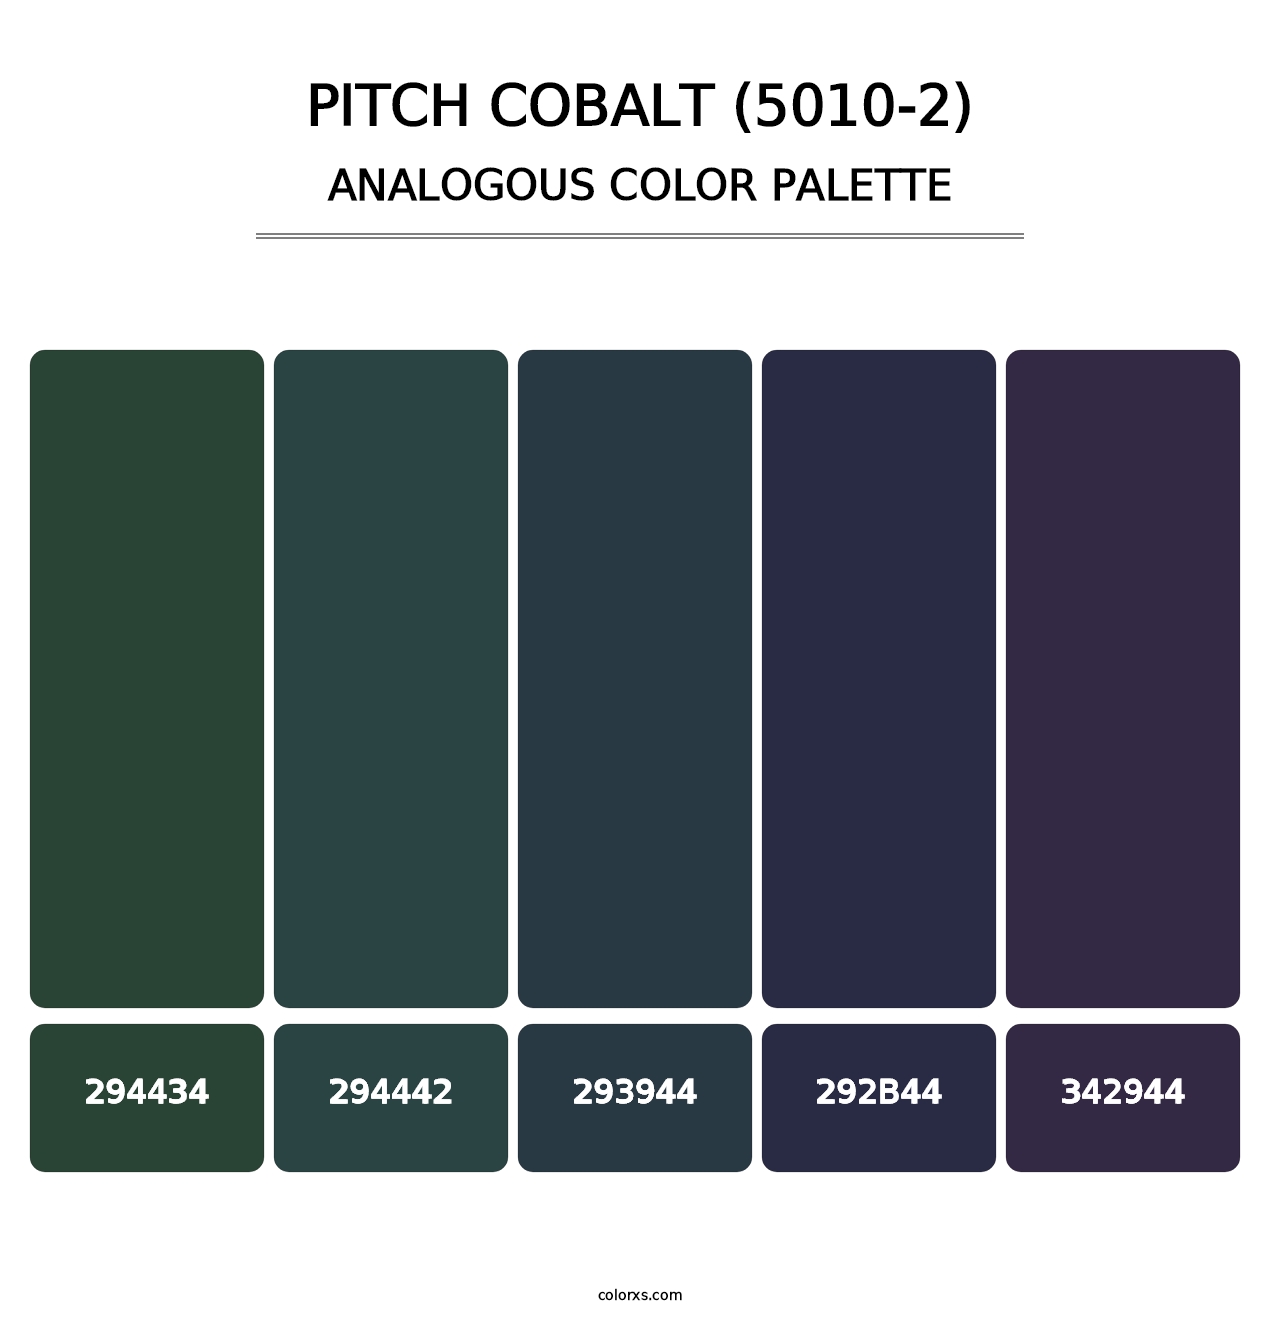 Pitch Cobalt (5010-2) - Analogous Color Palette